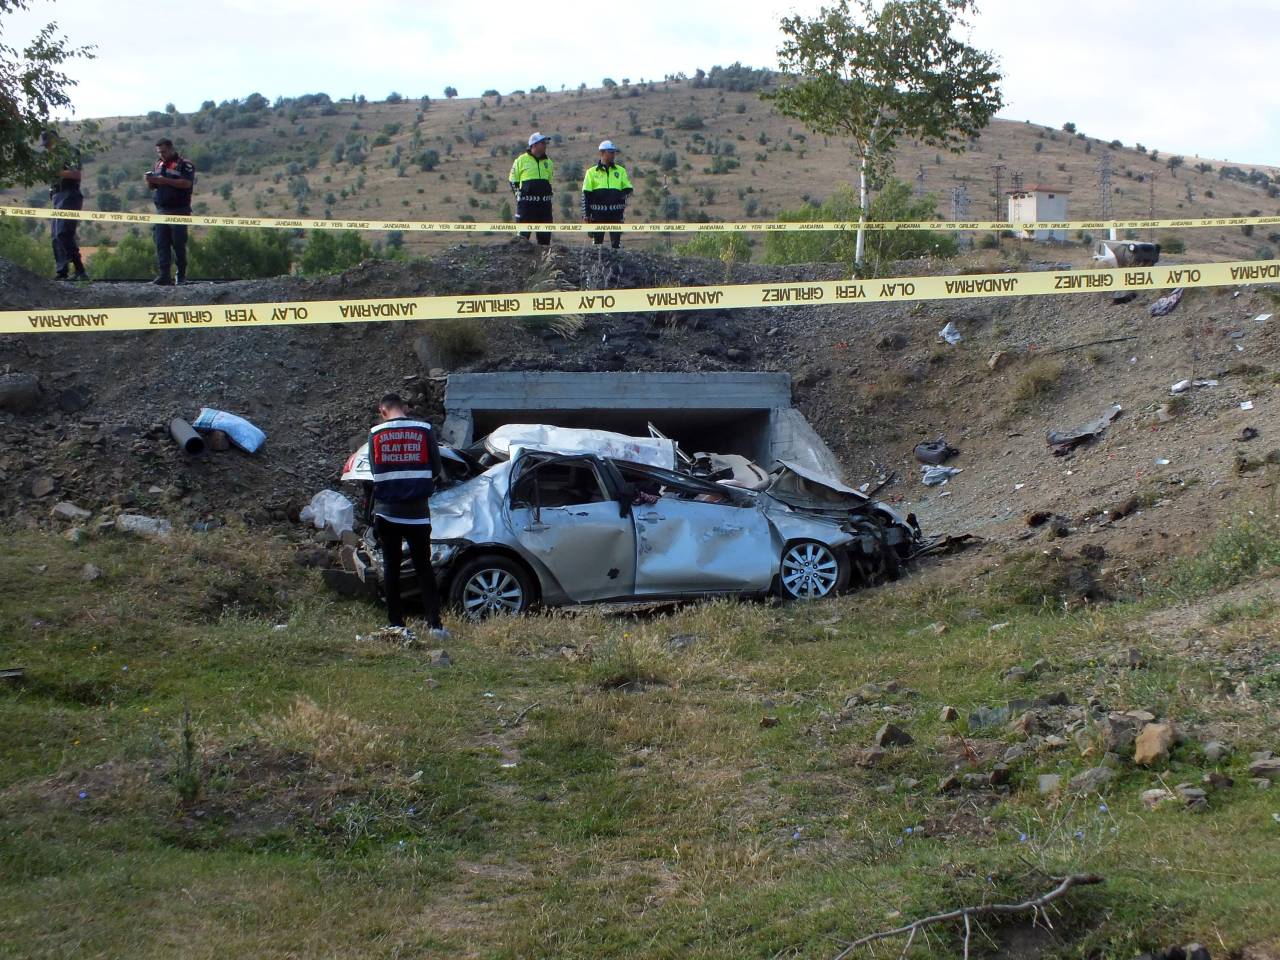 Yozgat'ta Otomobil Menfeze Düştü: 1 Ölü, 2 Yaralı